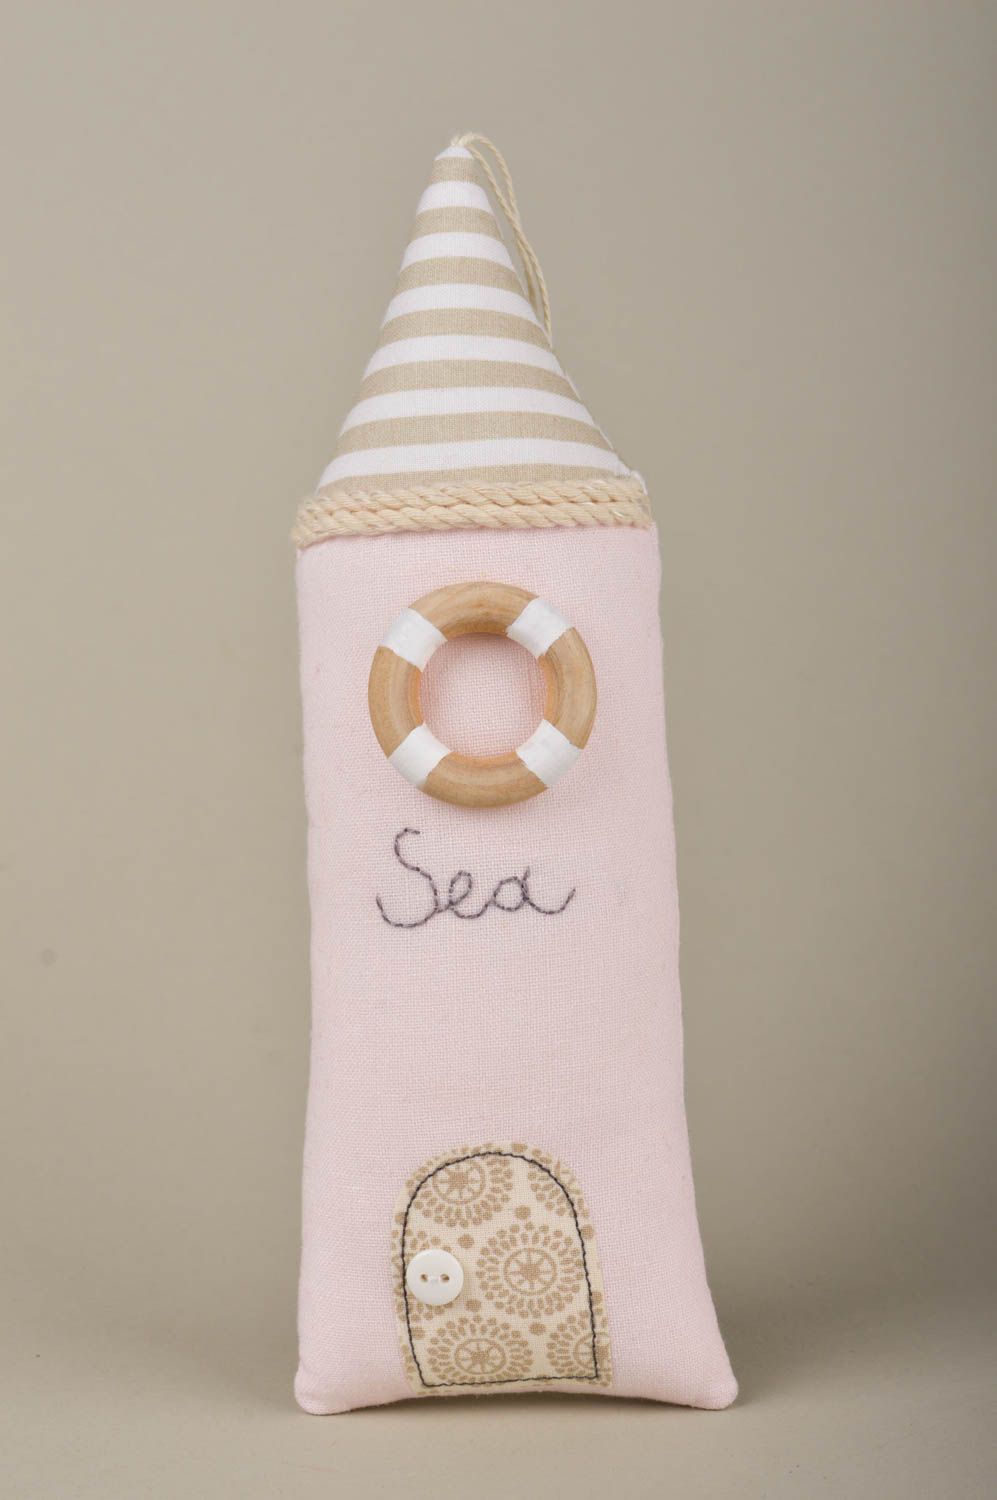 Игрушка домик морская игрушка ручной работы интересный подарок авторский фото 1